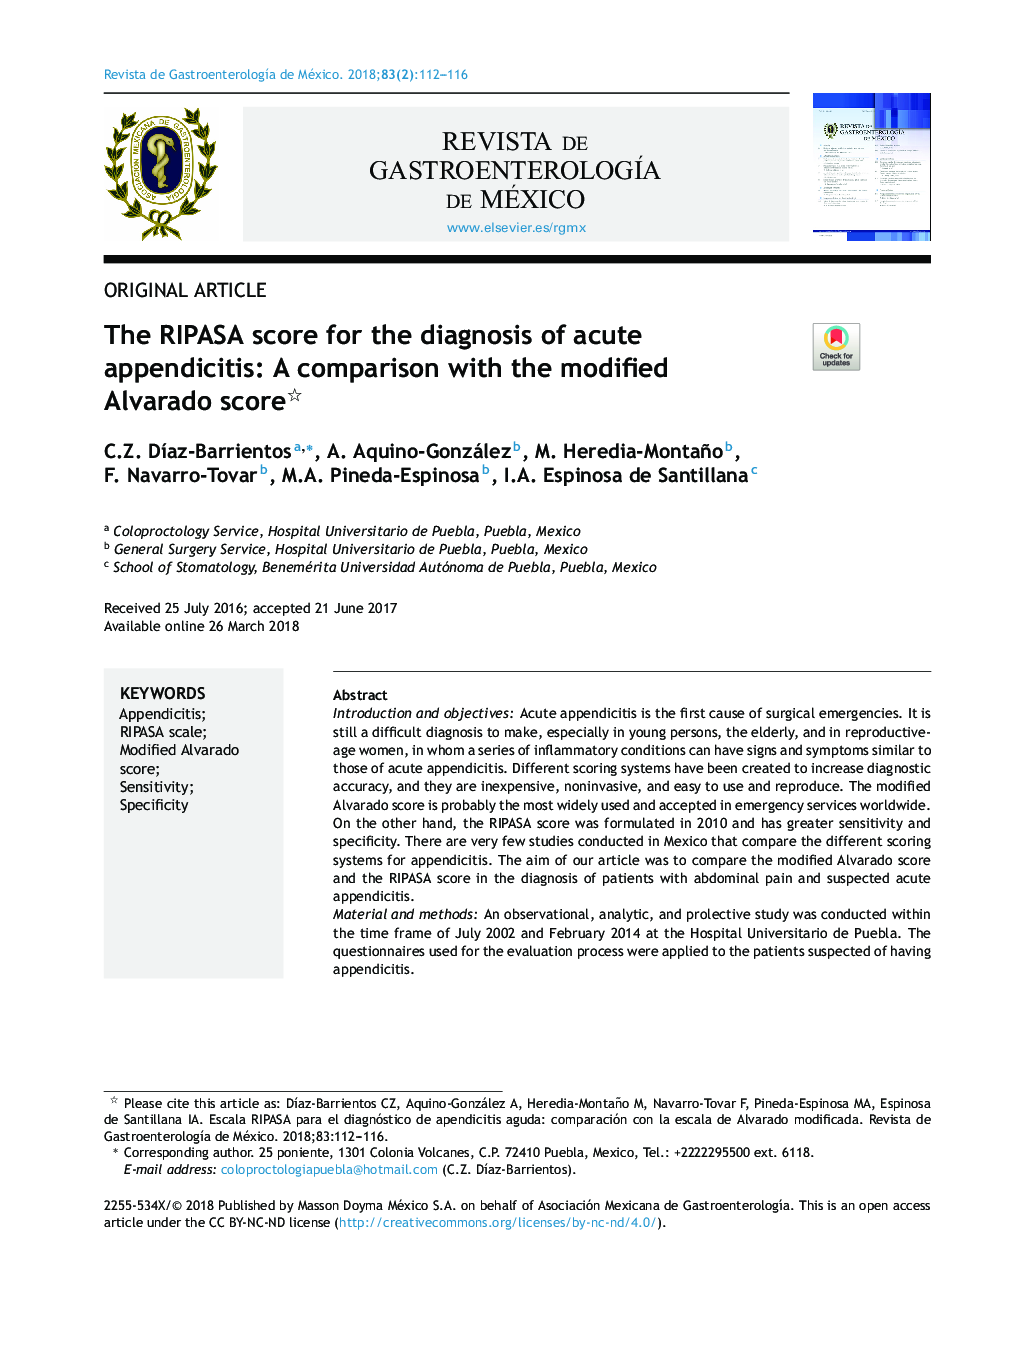 The RIPASA score for the diagnosis of acute appendicitis: A comparison with the modified Alvarado score